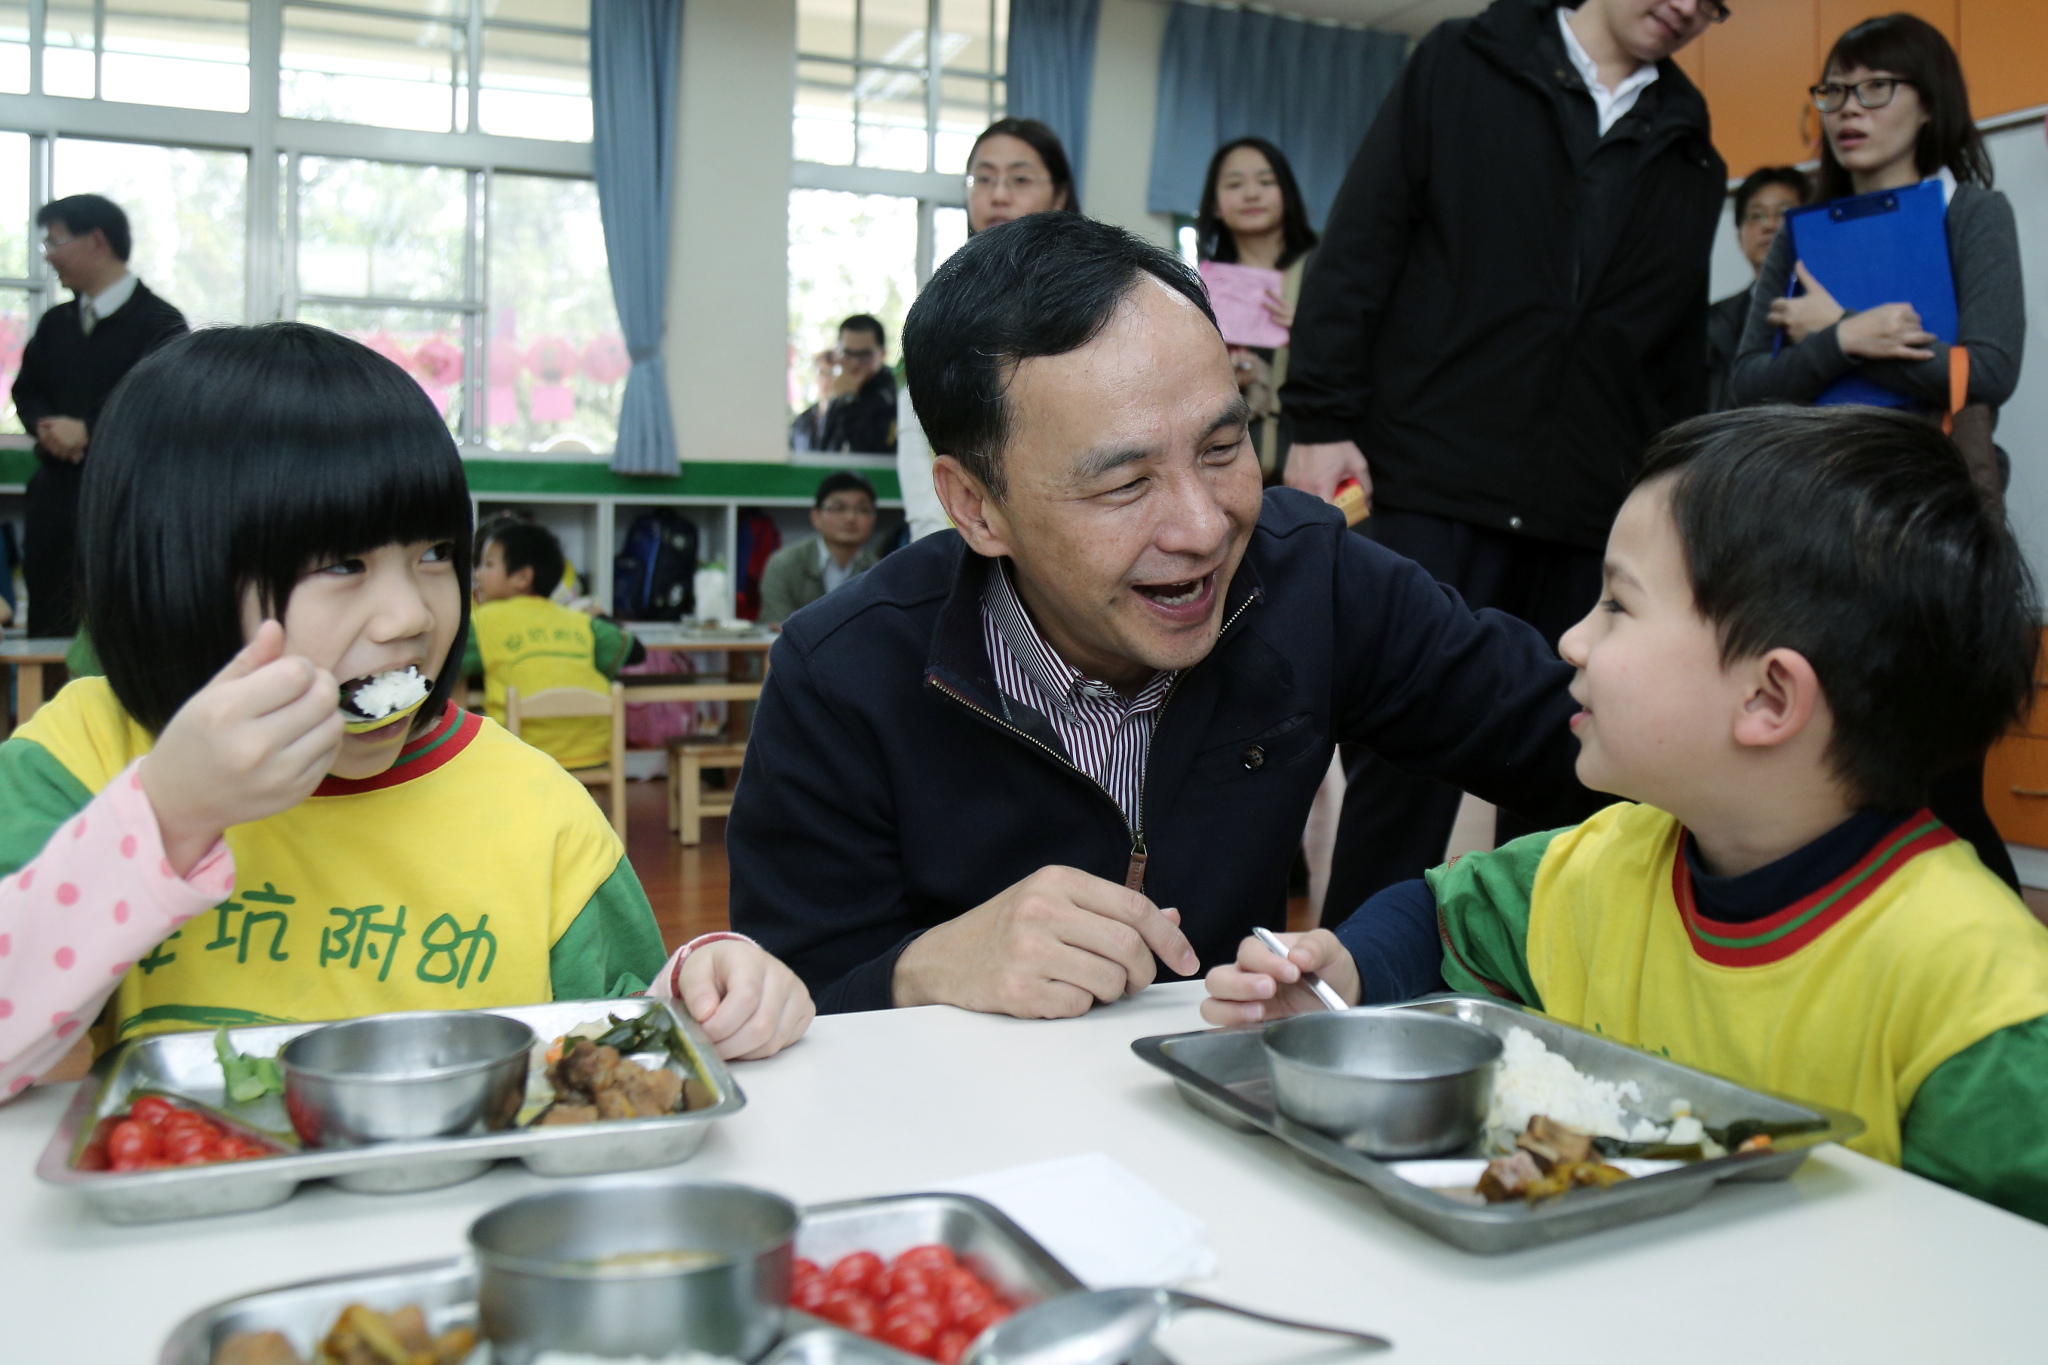 讓孩子吃得健康營養「4+1安心蔬菜計畫」擴及公立幼兒園